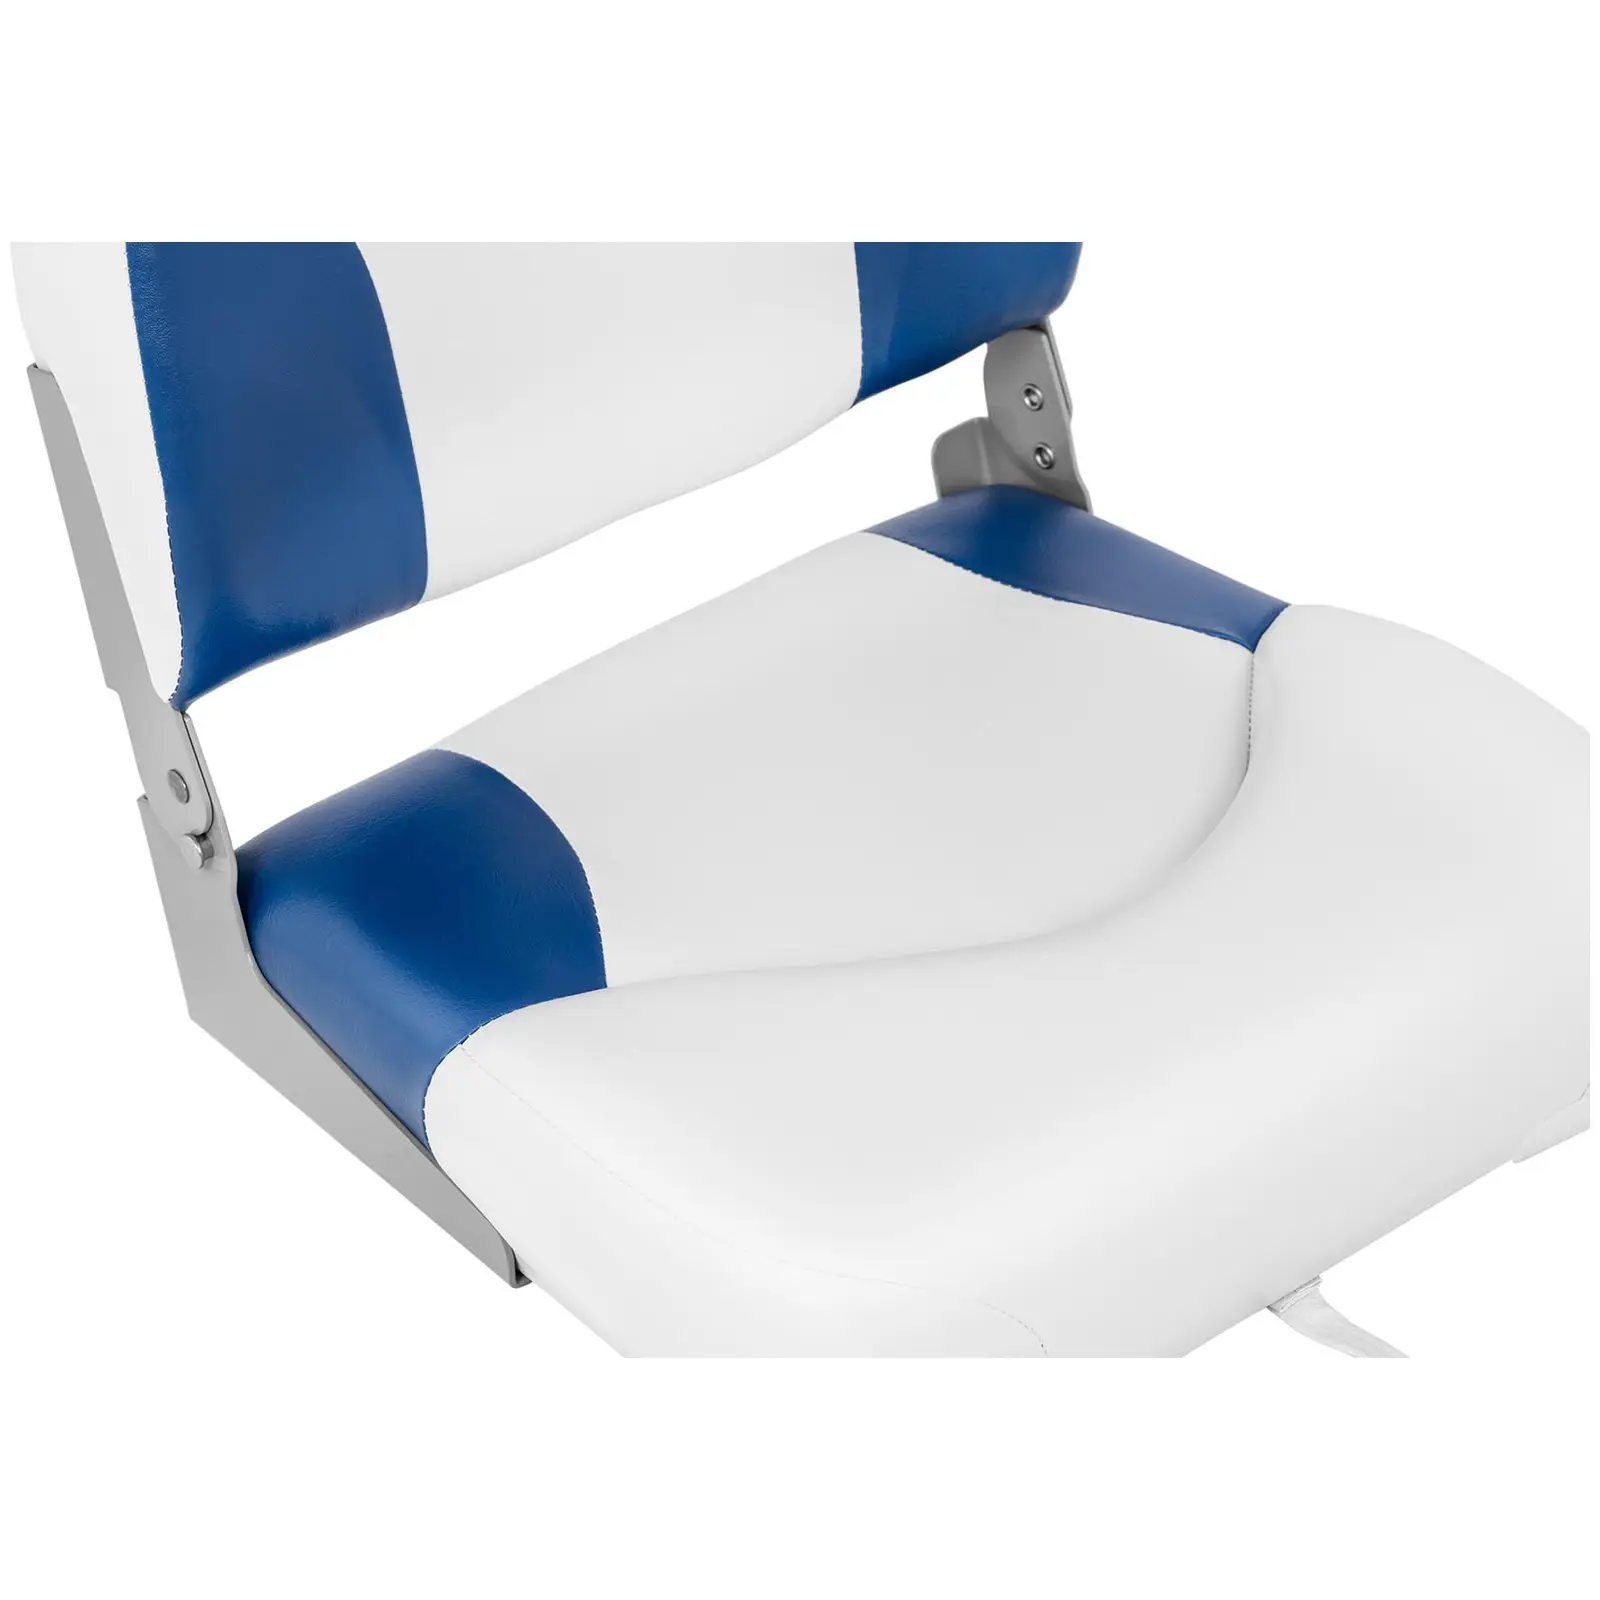 Fotele do łodzi - 2 szt. - 50x42x51 cm - biało-niebieskie